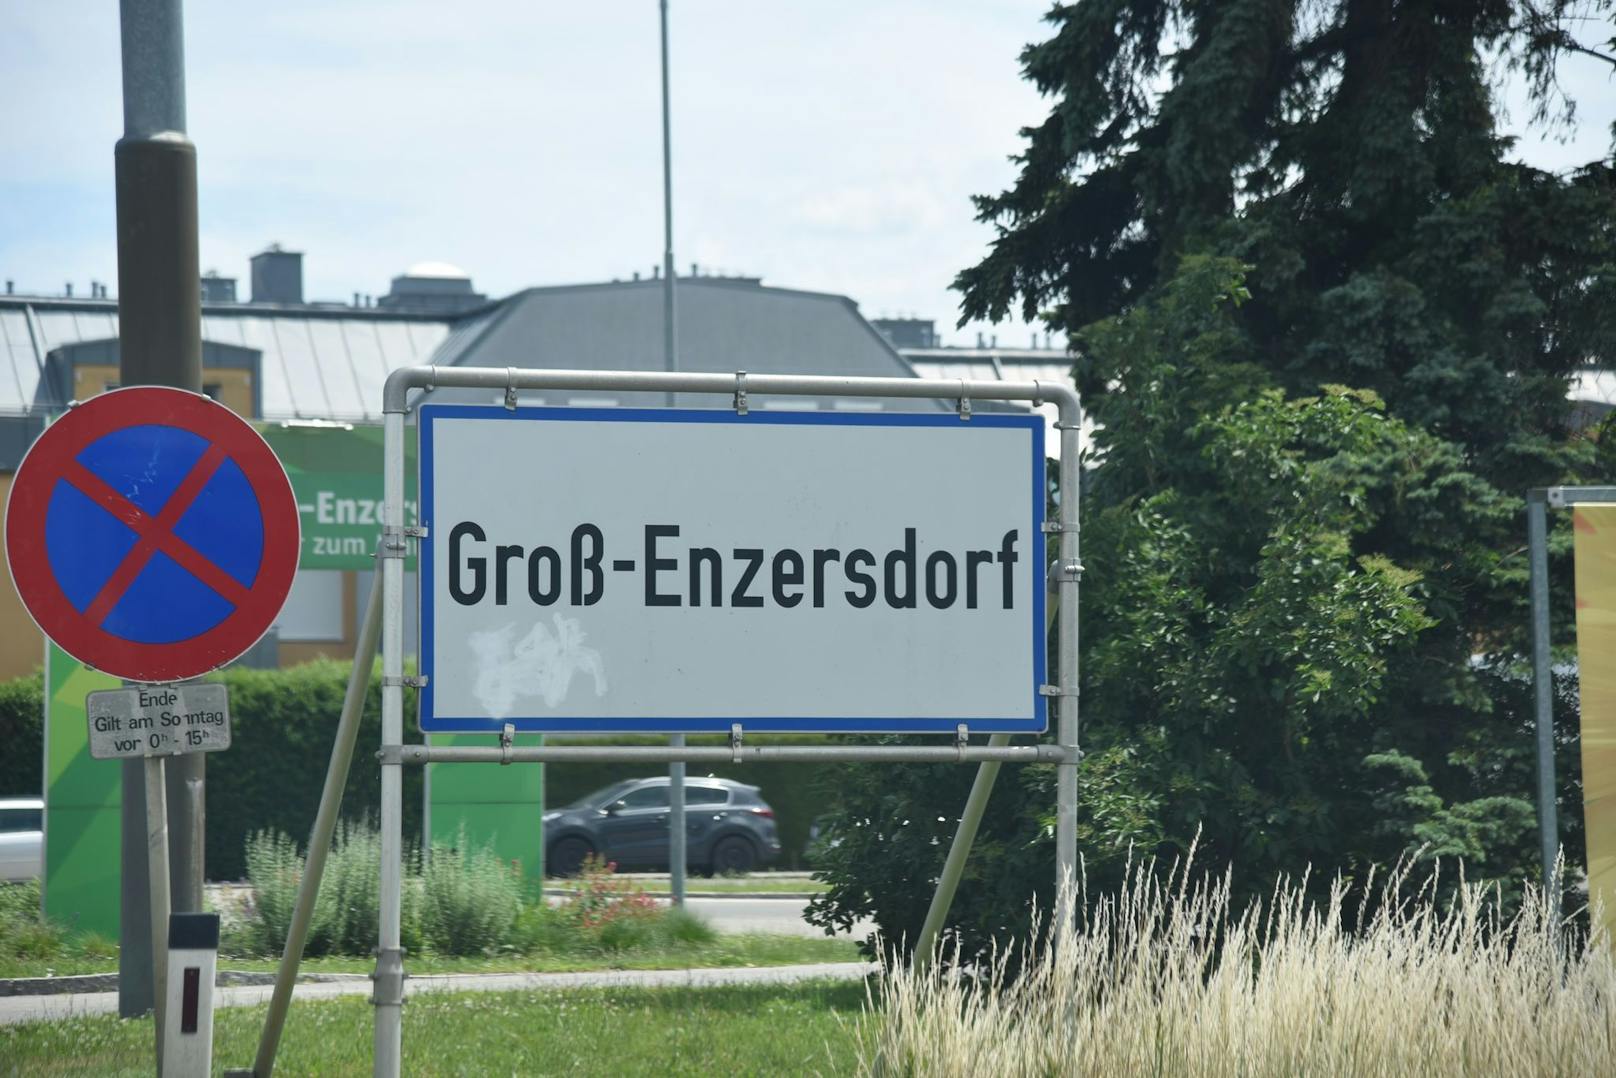 Bluttat in Groß-Enzersdorf